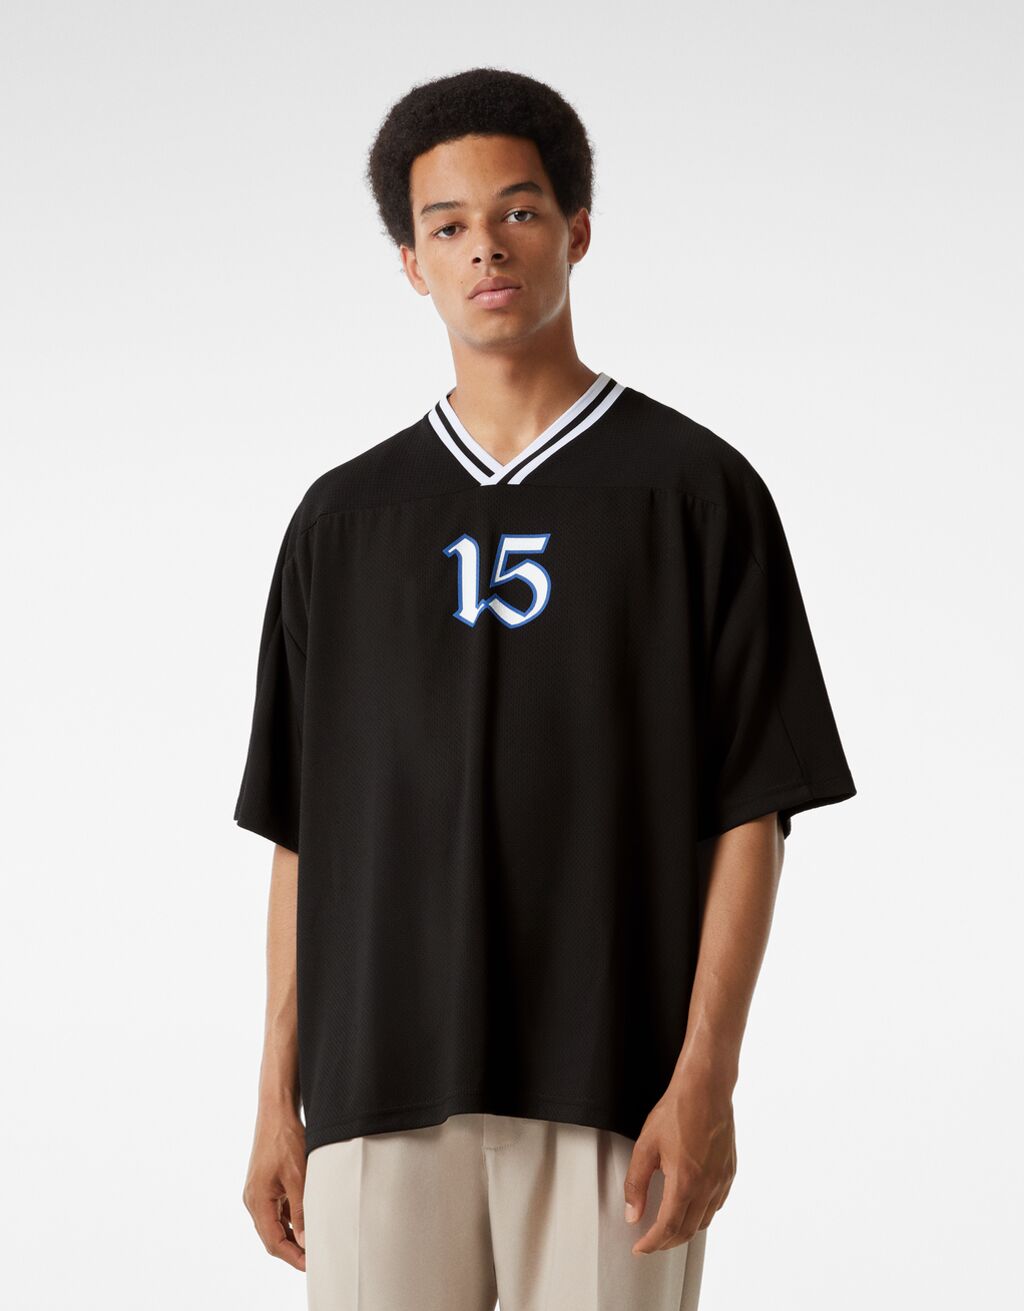 Basketbalshirt met korte mouw en print